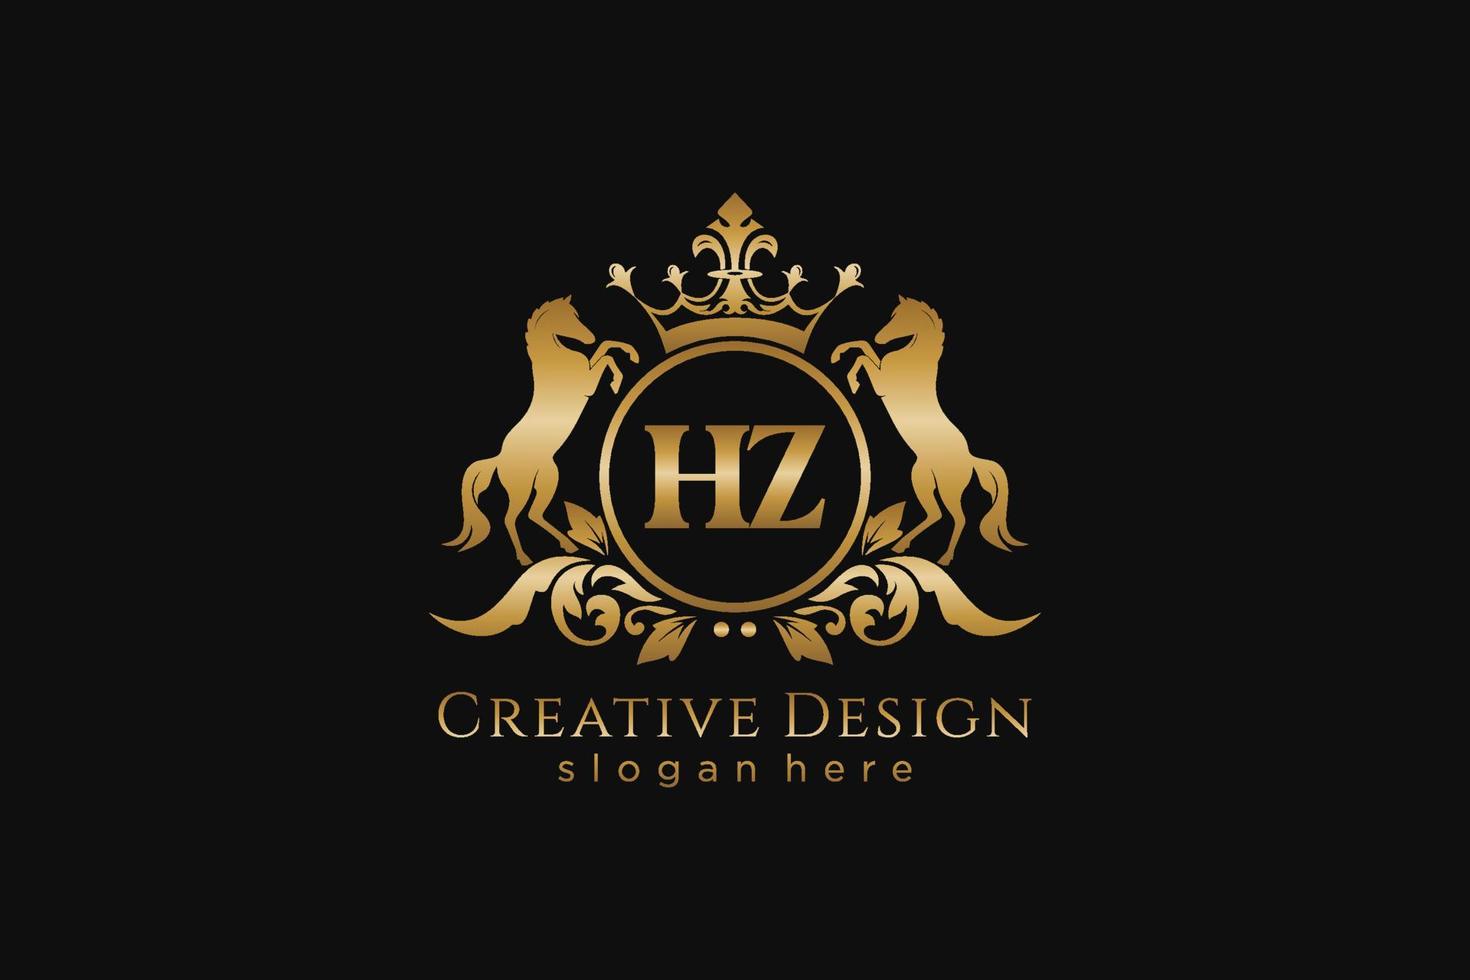 crista dourada retrô inicial hz com círculo e dois cavalos, modelo de crachá com pergaminhos e coroa real - perfeito para projetos de marca luxuosos vetor